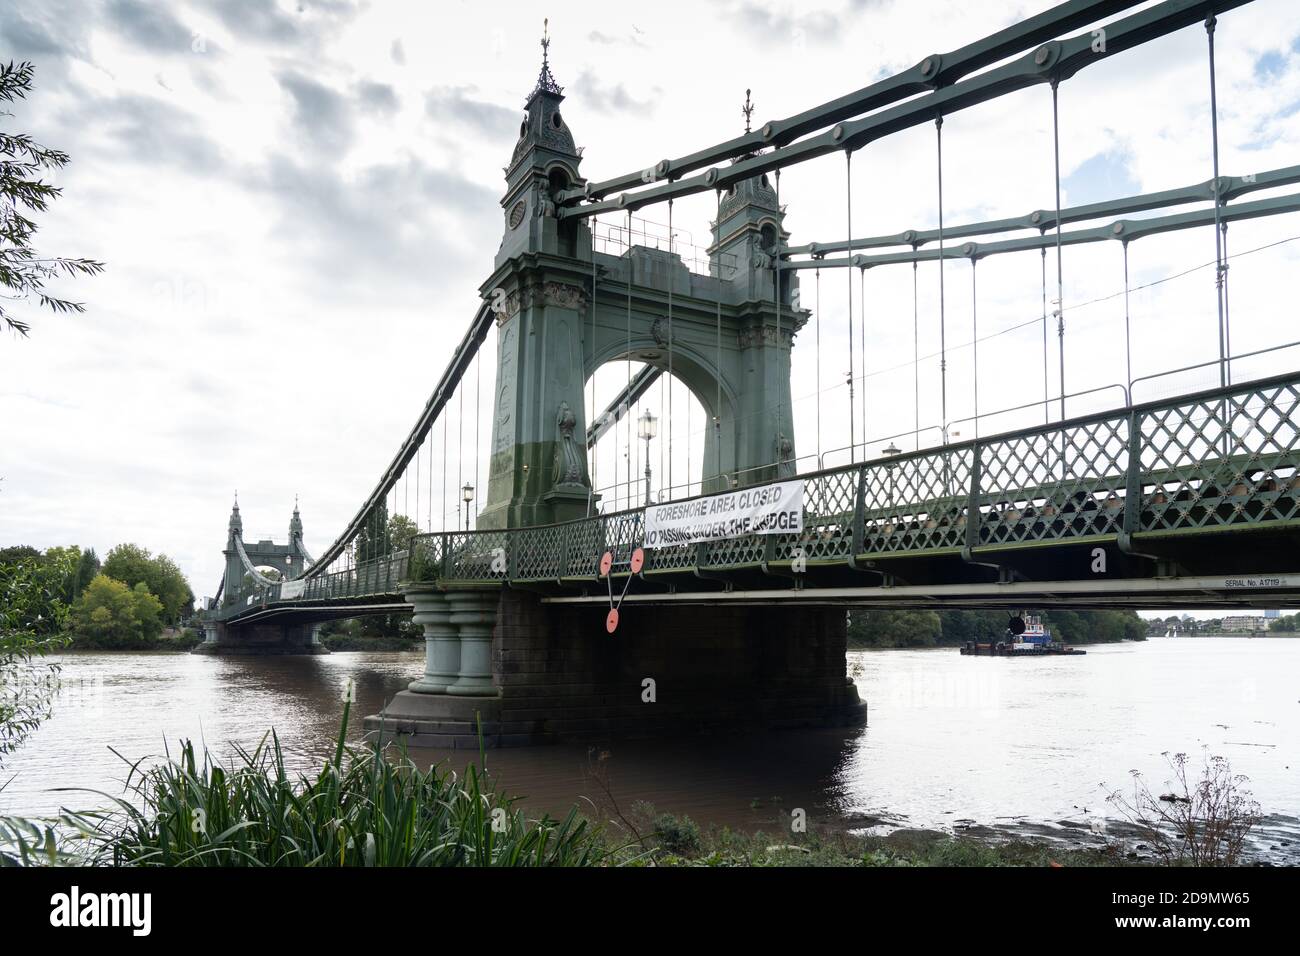 Hammersmith Bridge (actuellement fermé pour des raisons de sécurité) à Londres. Date de la photo : dimanche 6 septembre 2020. Photo: Roger Garfield/Alamy Banque D'Images